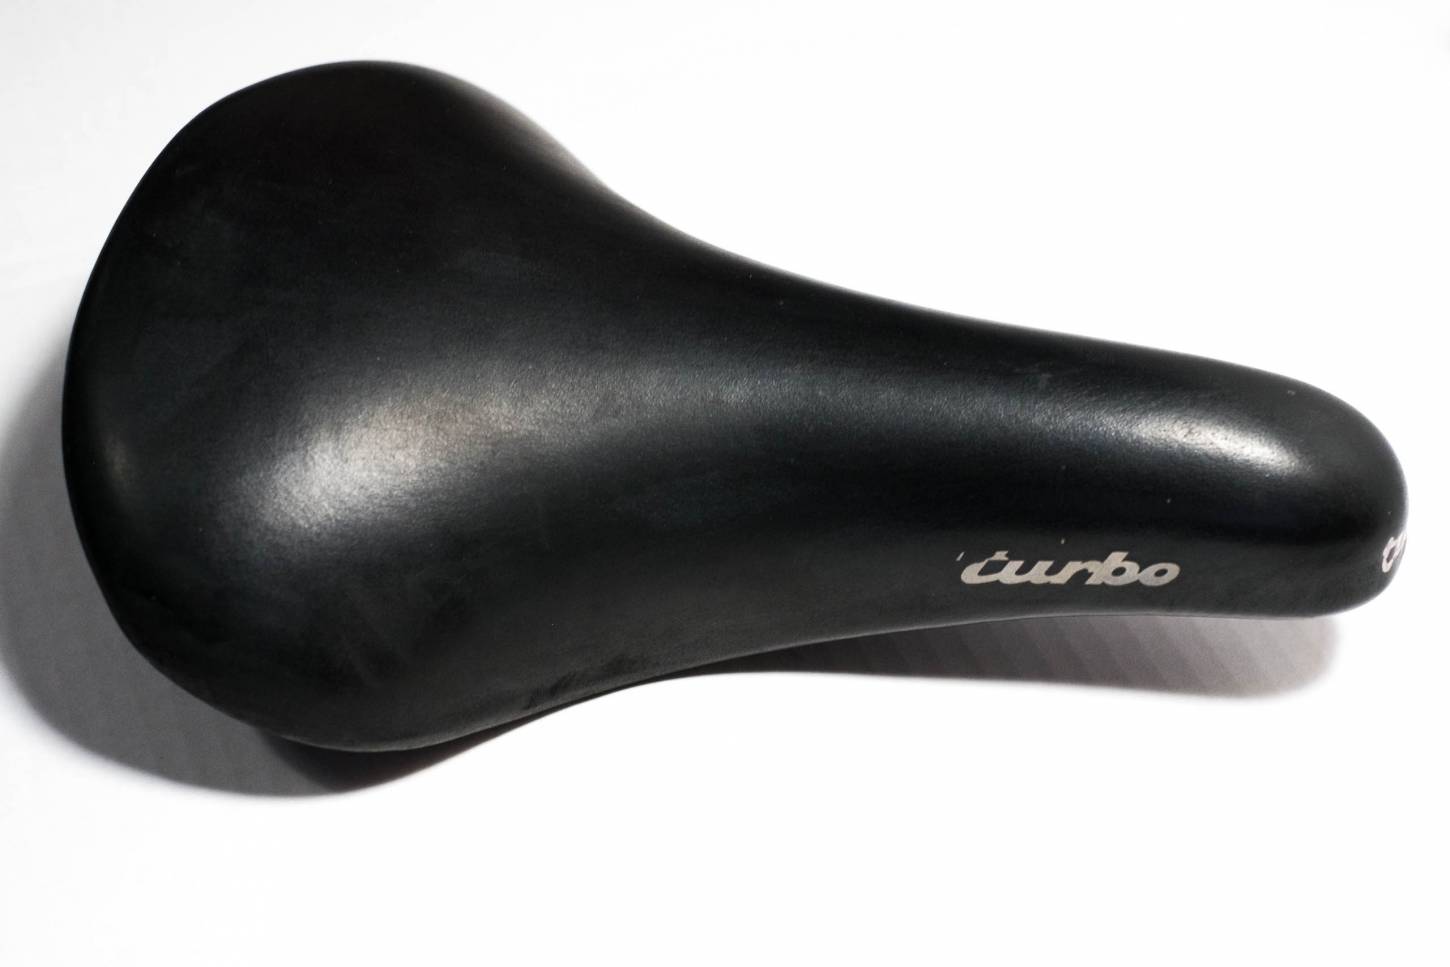 Selle Italia Turbo saddle women black leather vintage road bike